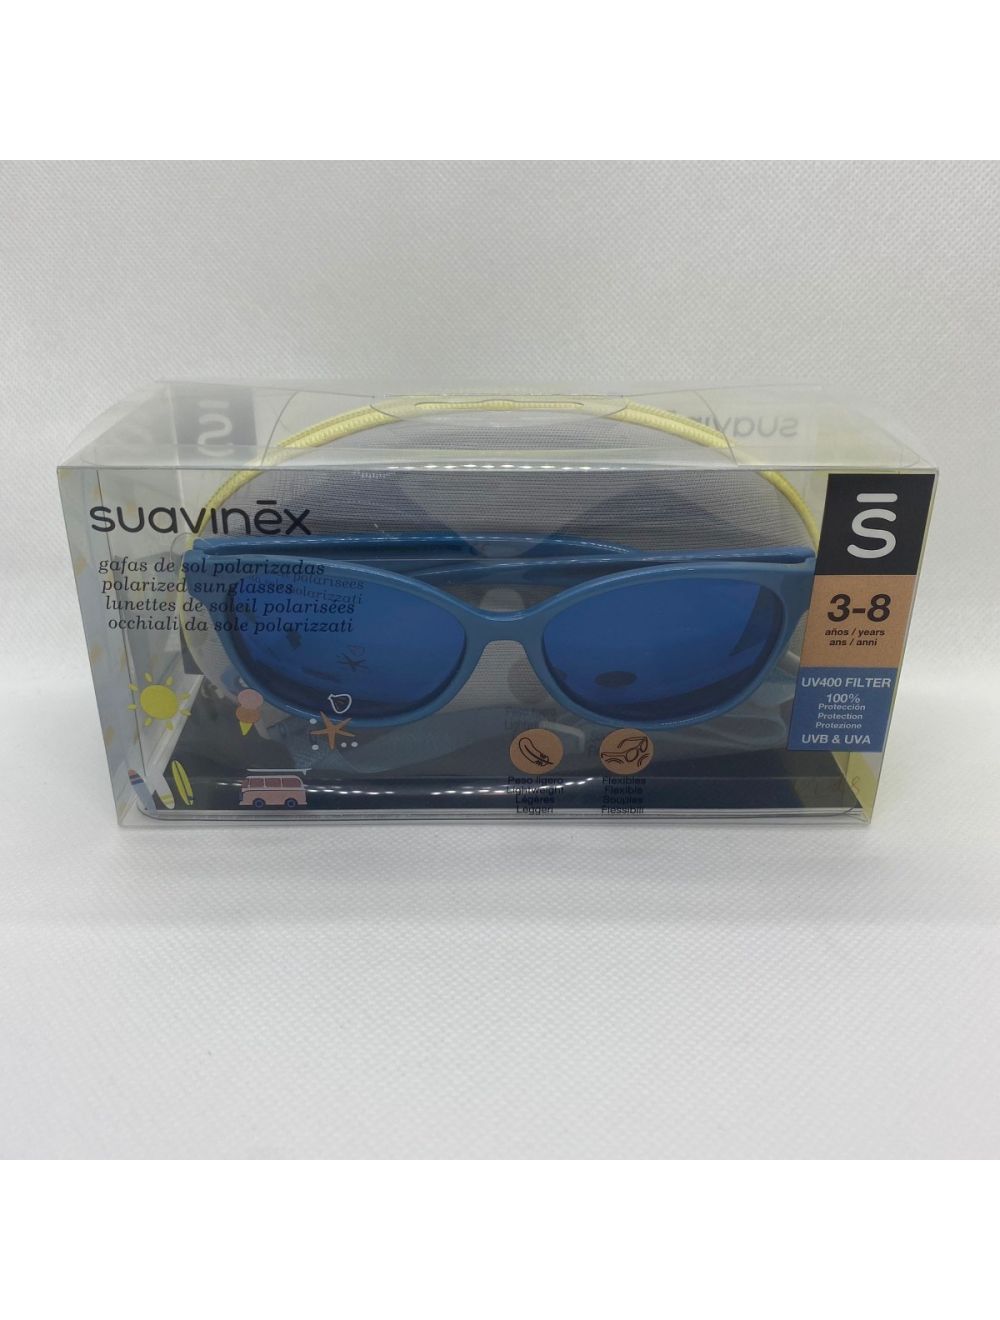 Gafas de Sol +36 meses - Suavinex